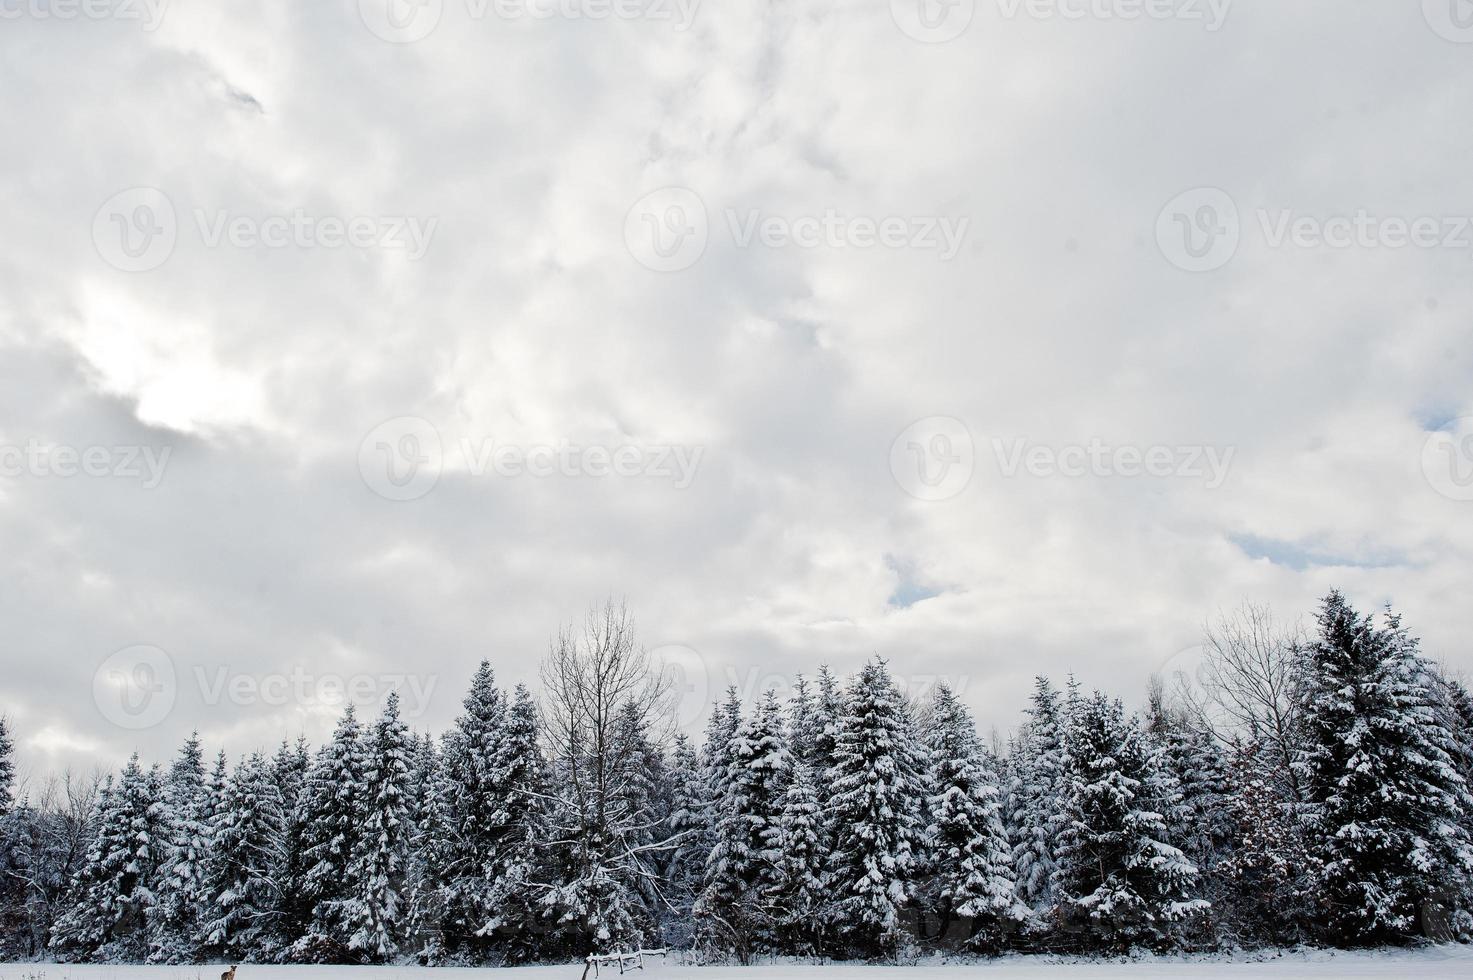 pijnbomen bedekt met sneeuw. prachtige winterlandschappen. vorst natuur. foto